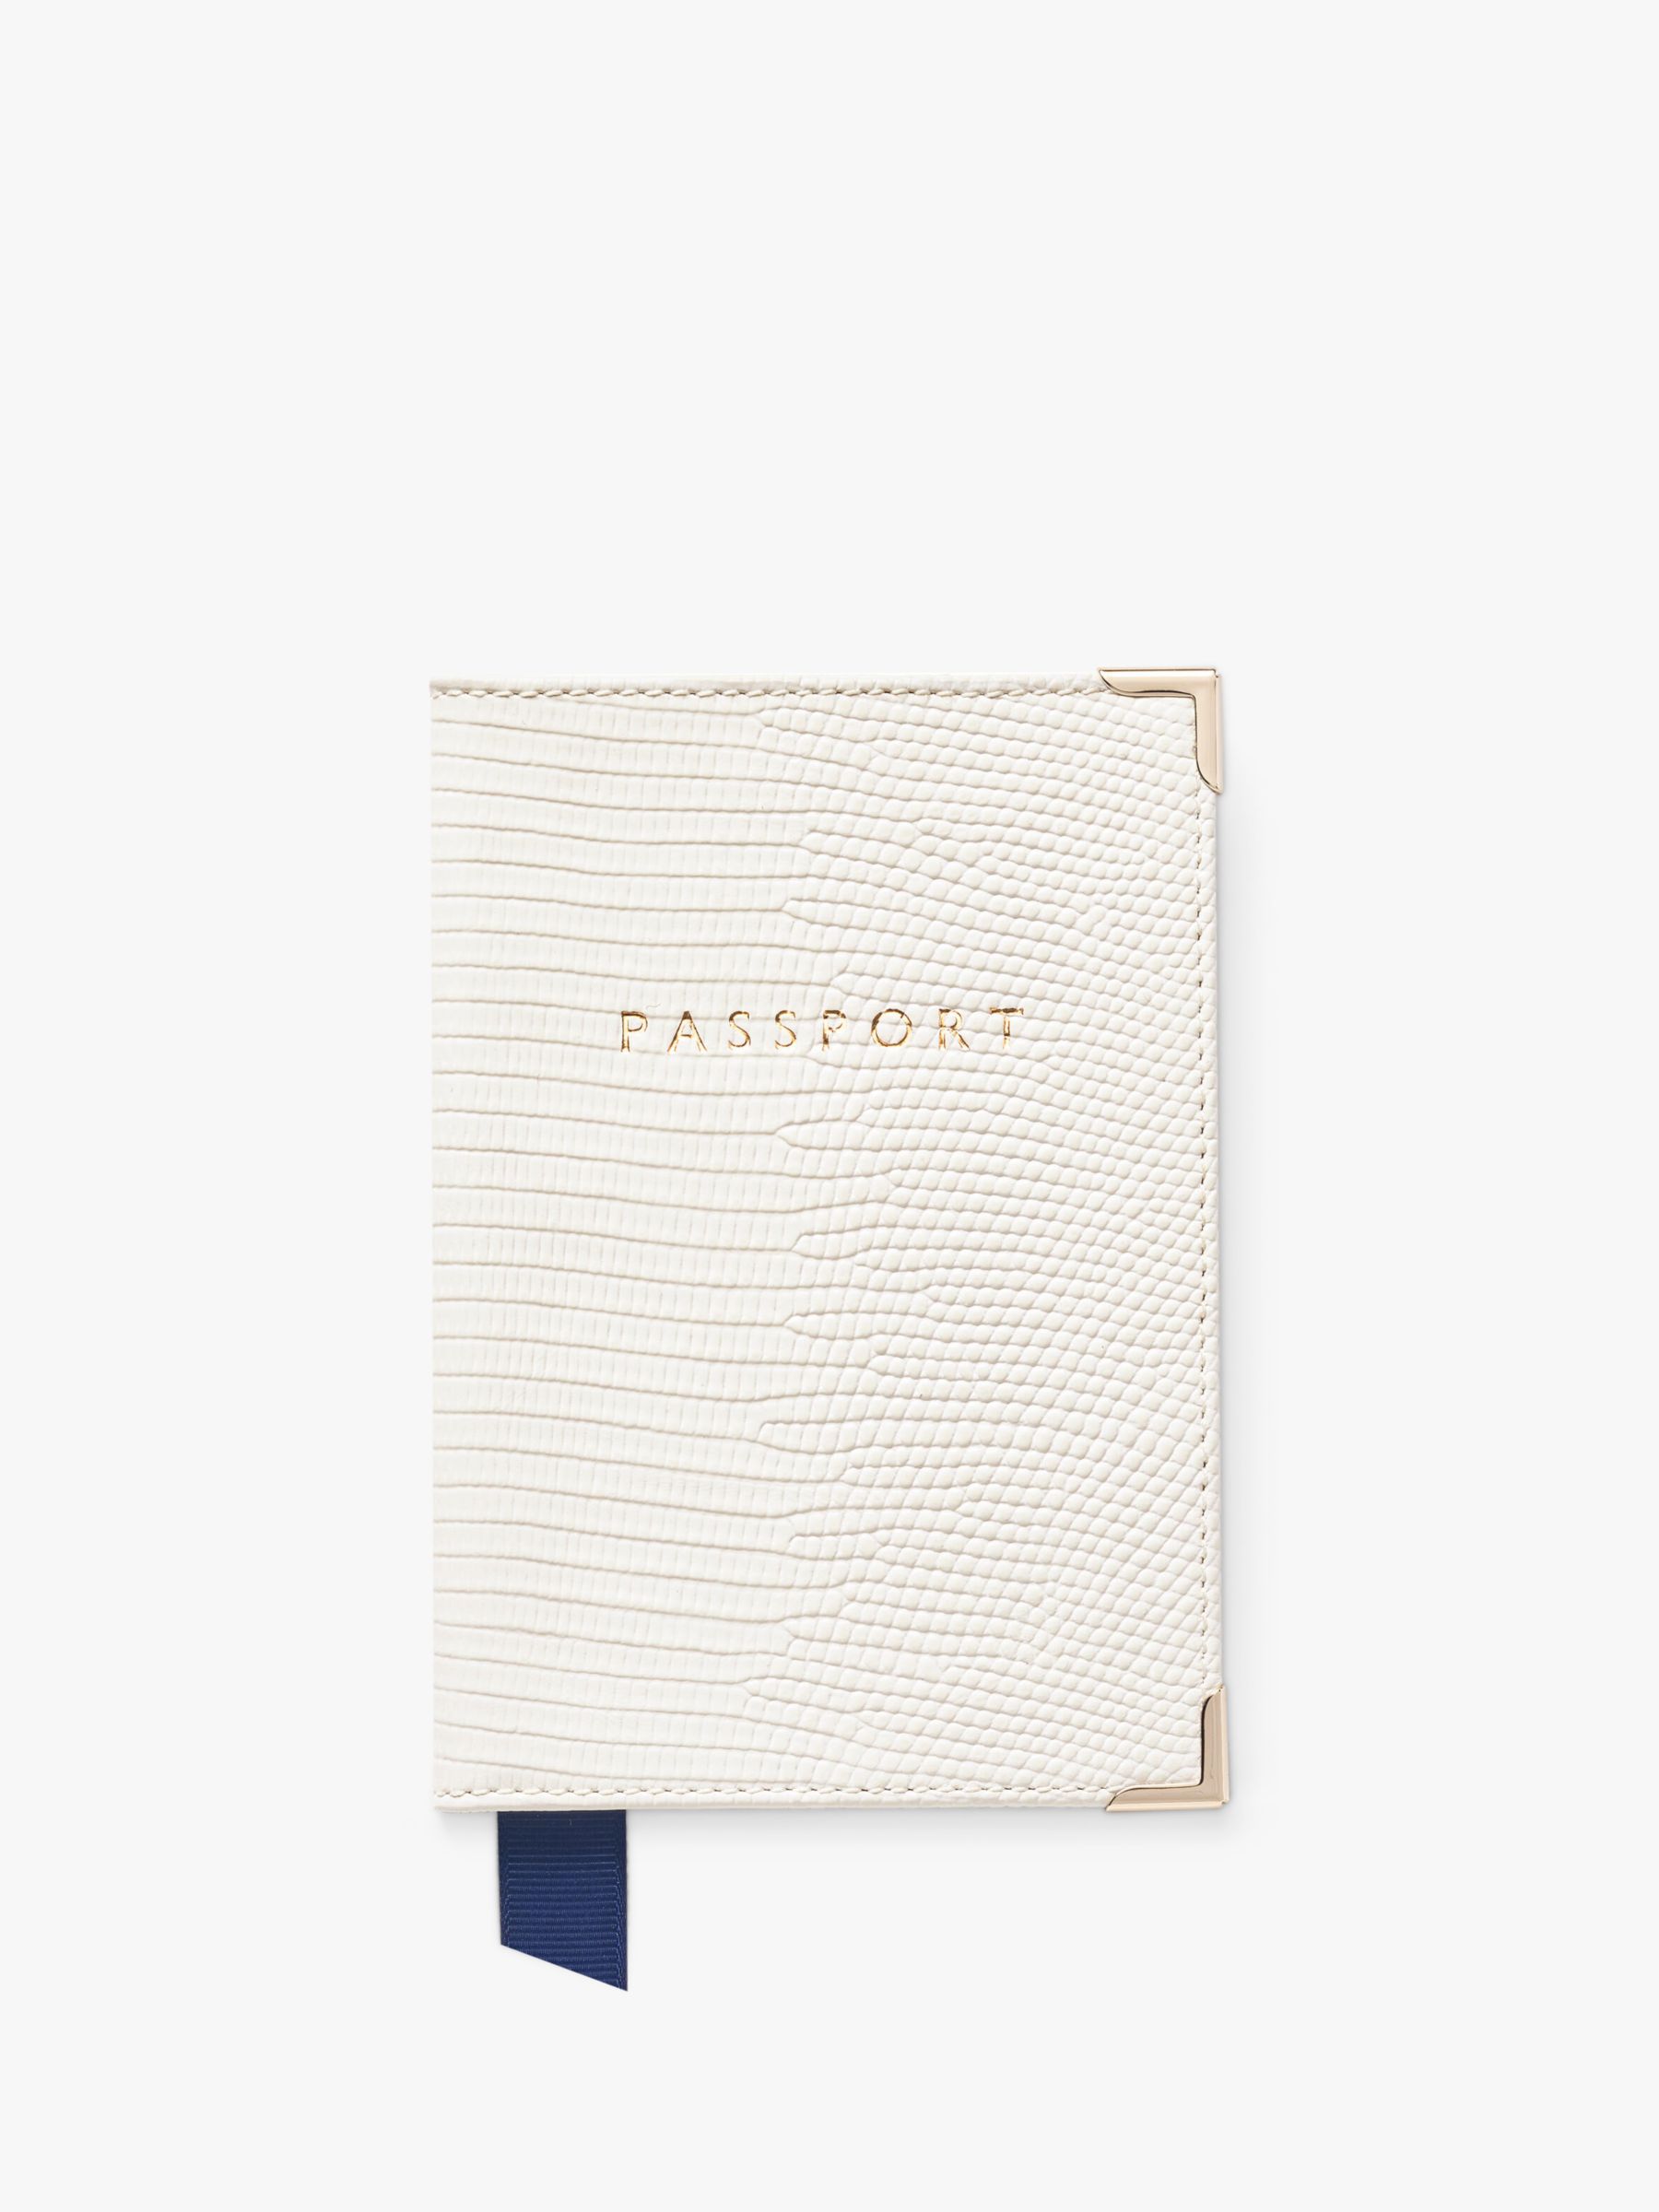 Travel Passport Covers